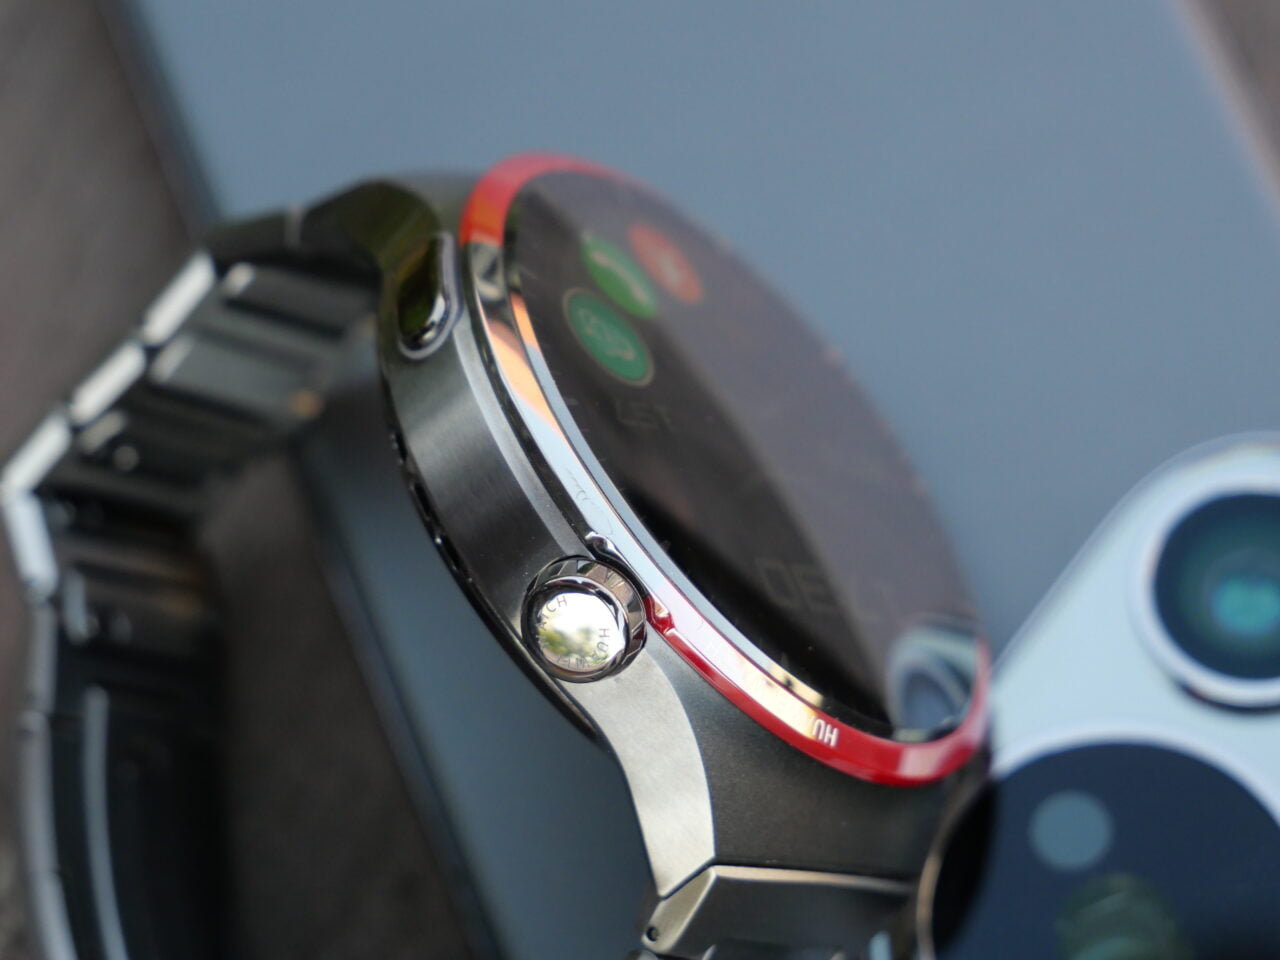 Zbliżenie na smartwatch z metalową bransoletą oraz smartfon z widocznymi aparatami.